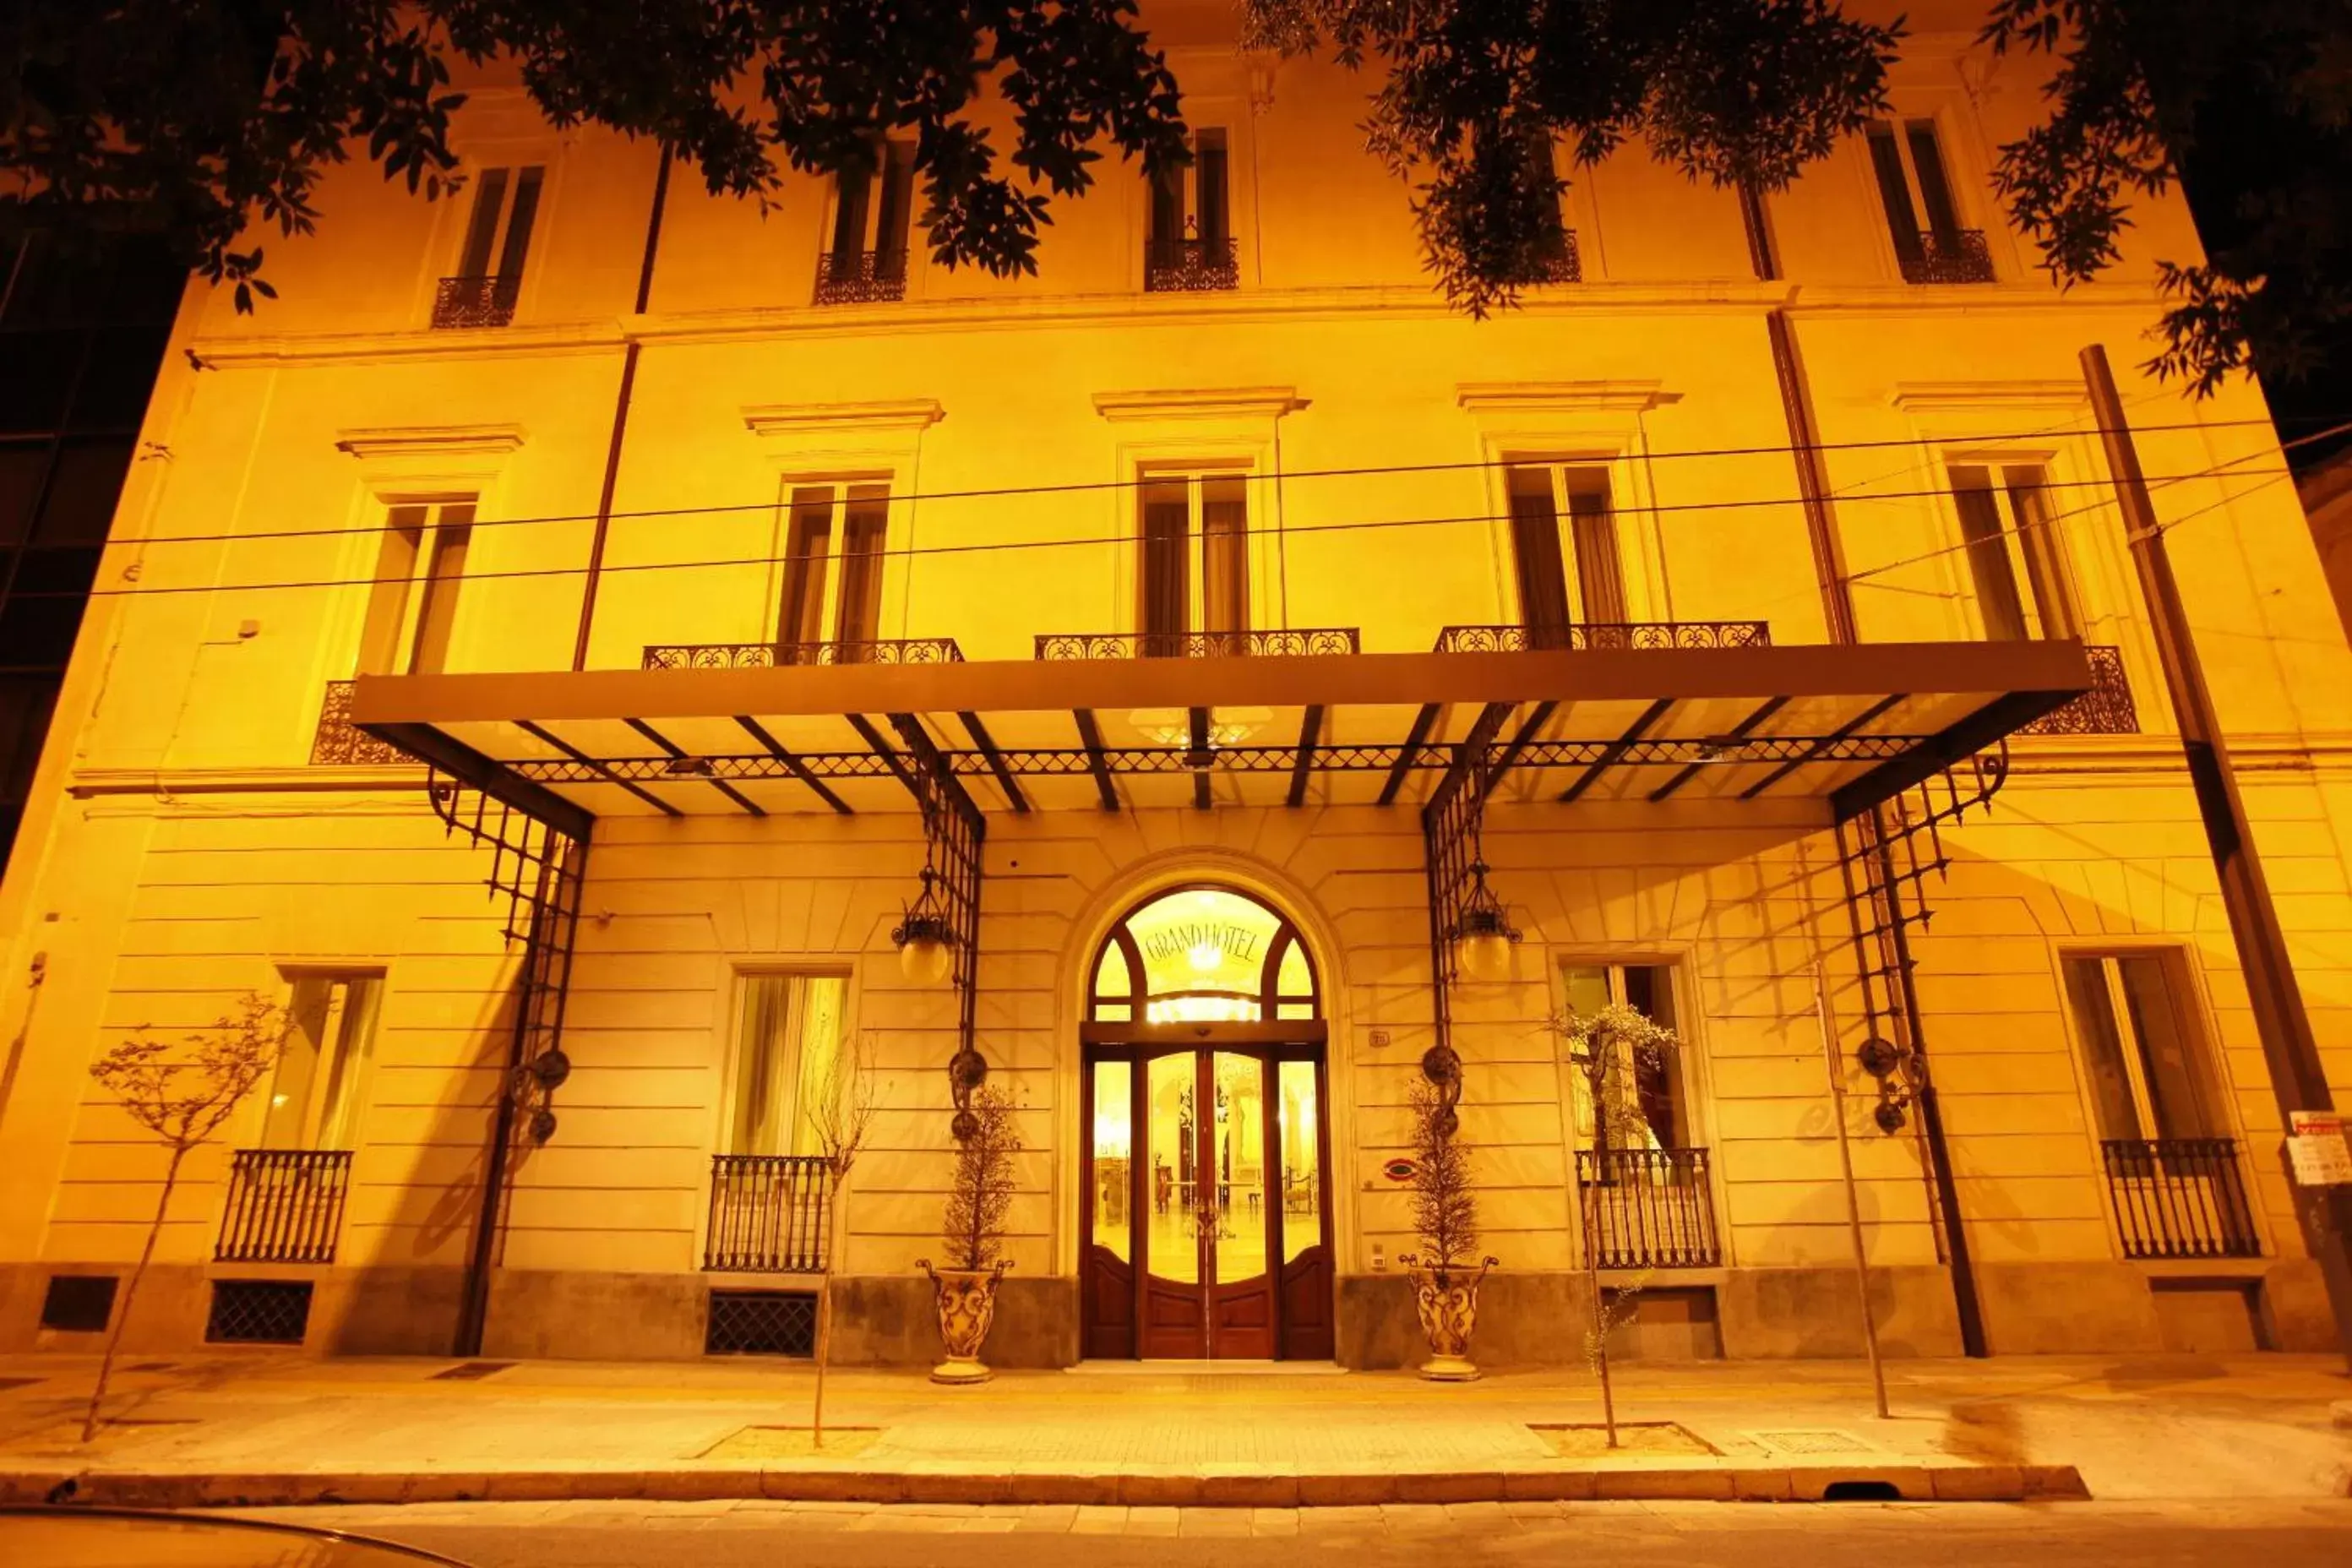 Facade/entrance in Grand Hotel Di Lecce